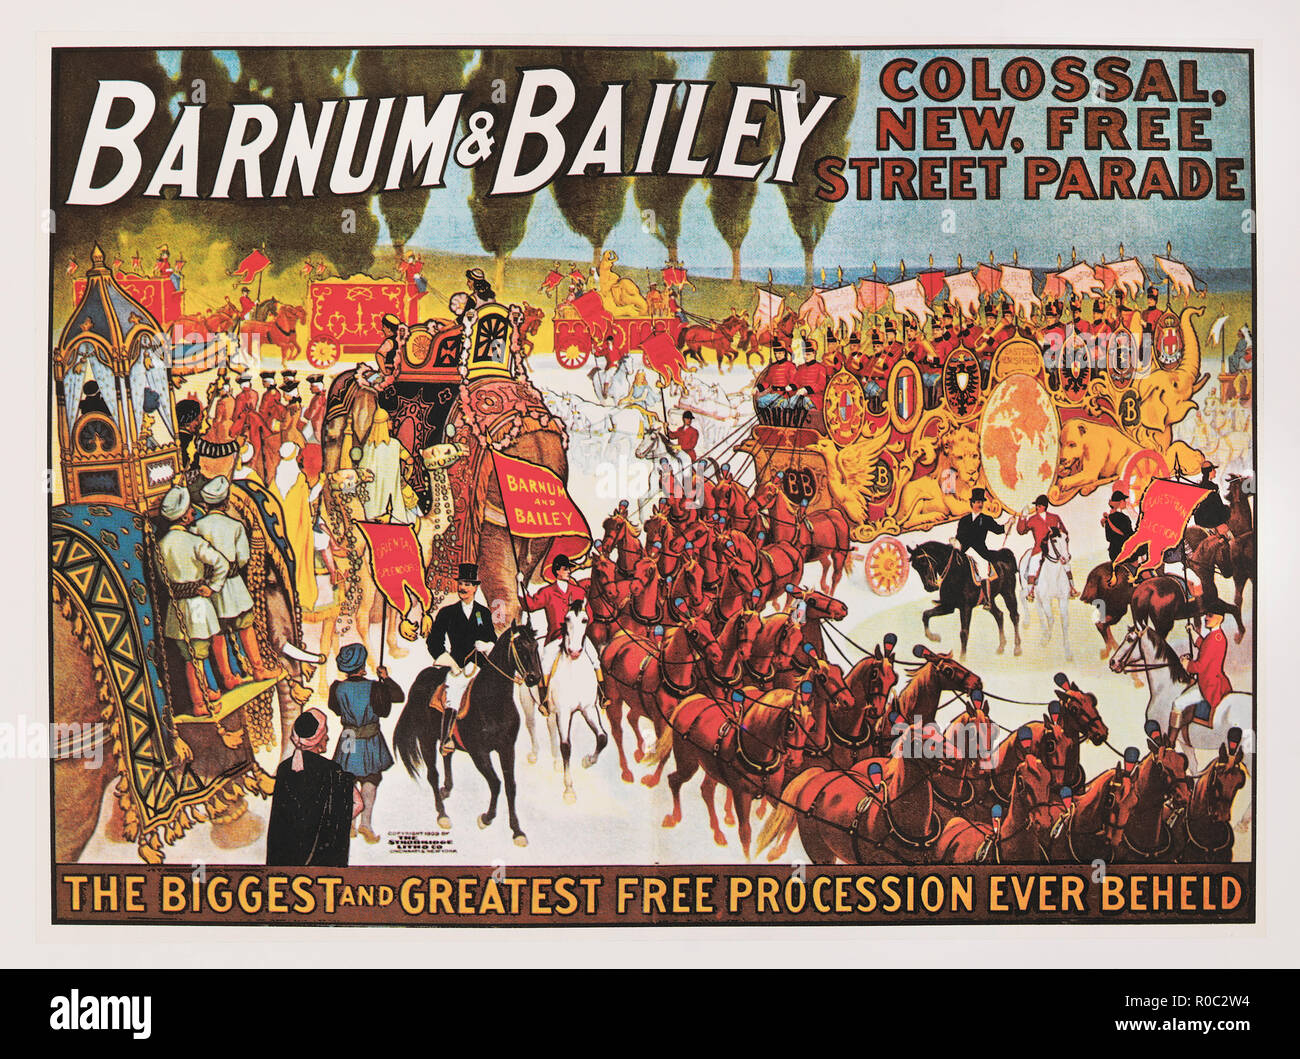 Barnum & Bailey colosal, Nuevos gratis Street Parade, el más grande y mejor en procesión libre nunca vió, póster de circo, litografía, 1909 Foto de stock